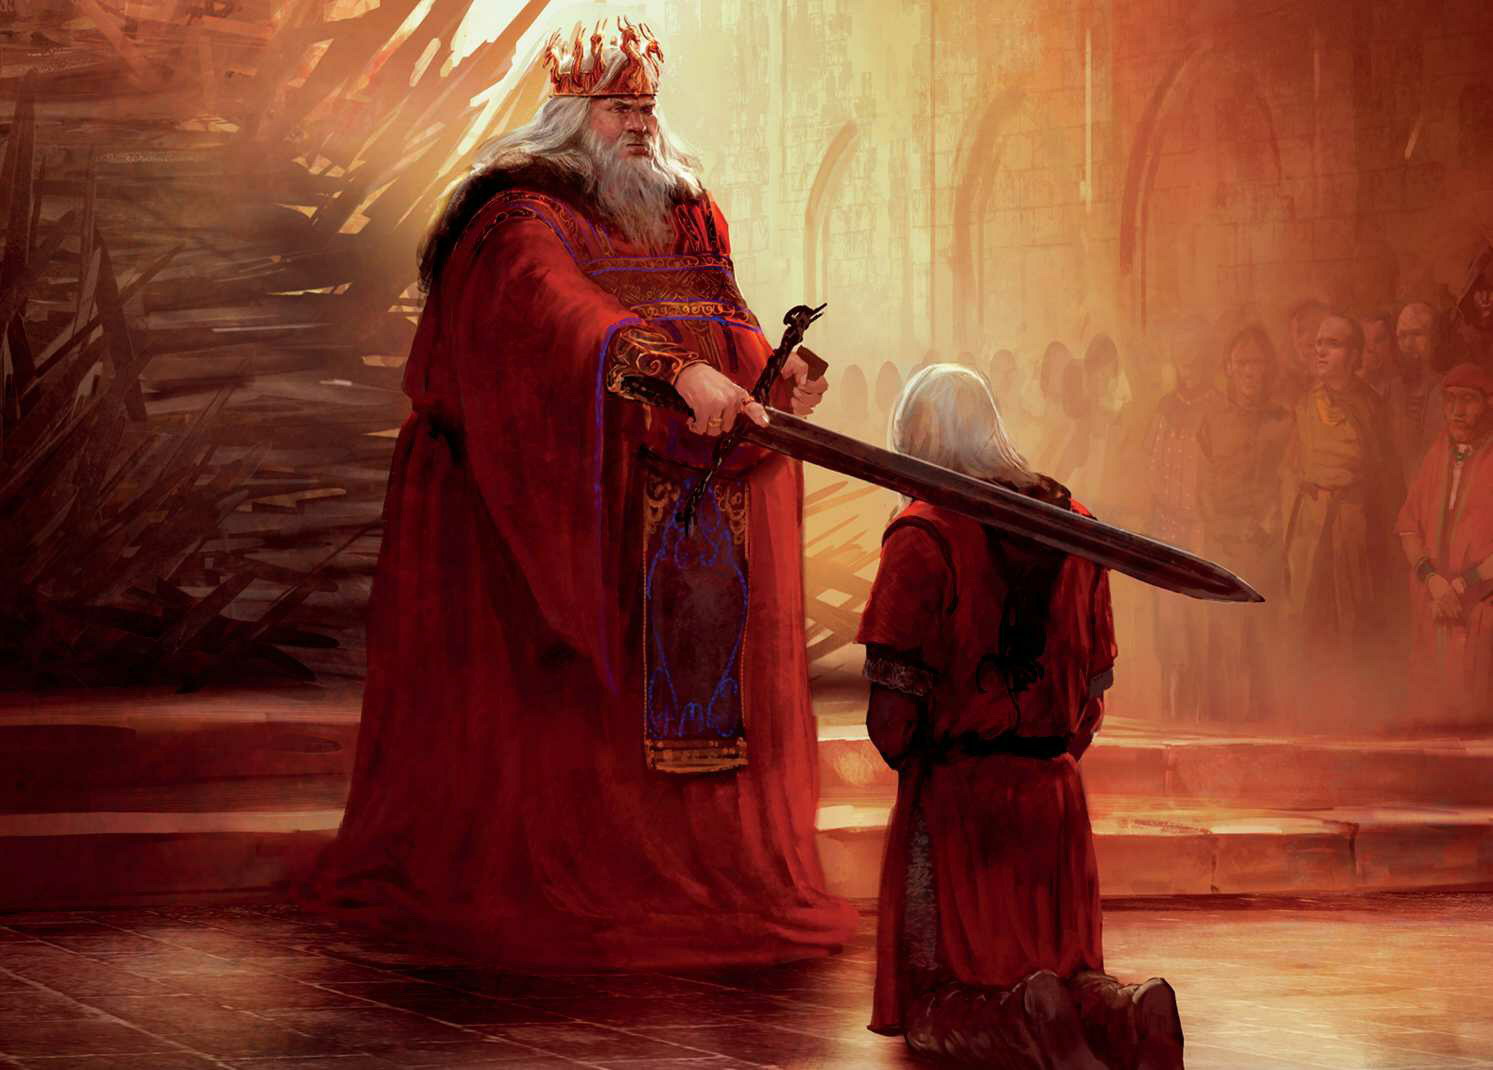 Aegon IV Targaryen reconhece Daemon como seu filho bastardo. (Arte: Marc Simonetti para O Mundo de Gelo e Fogo).